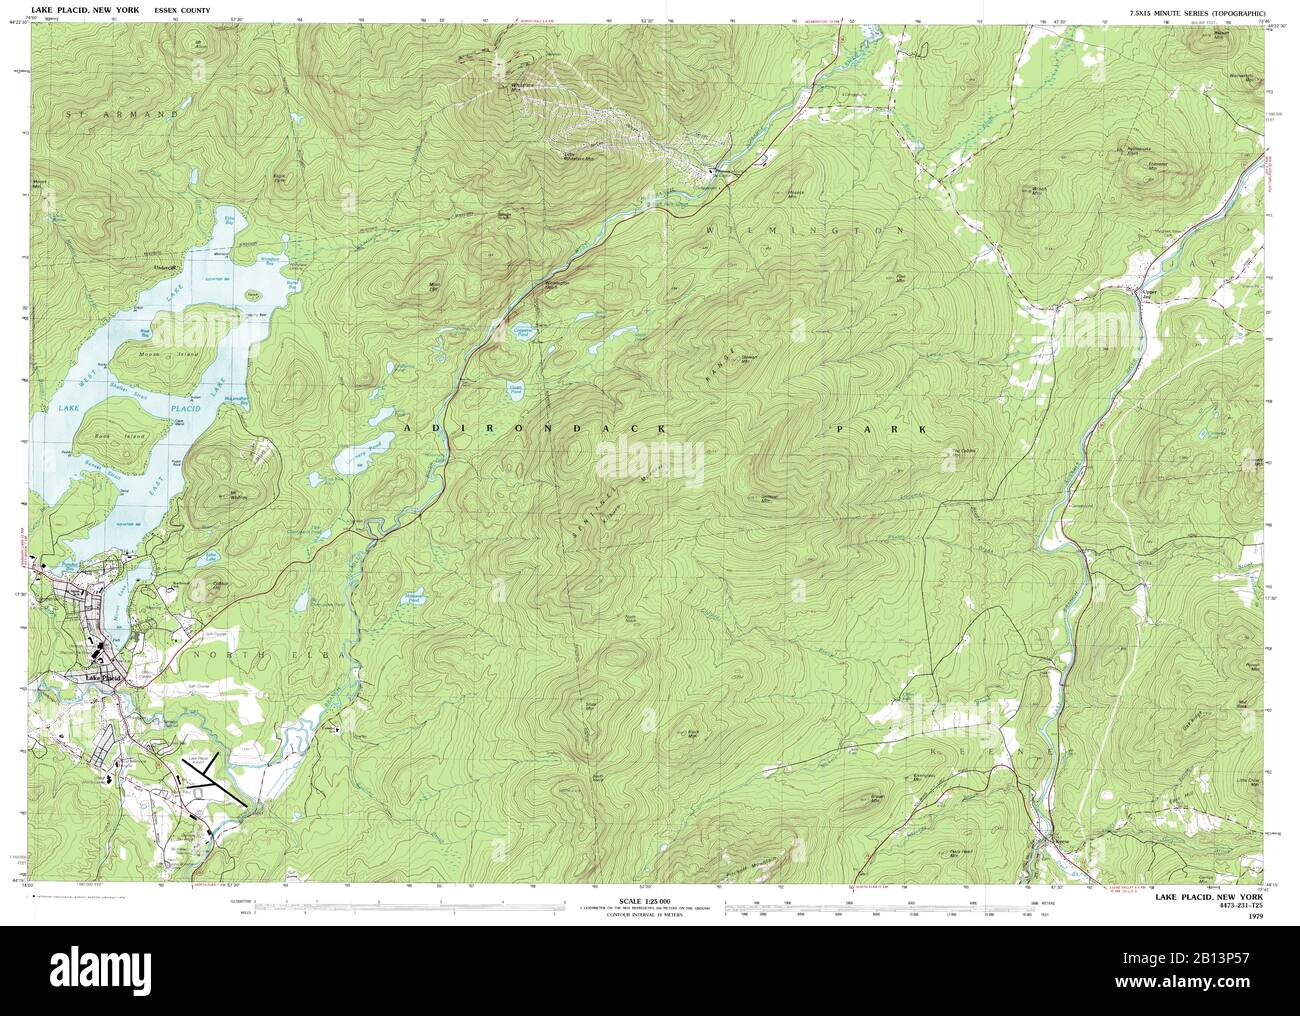 Vue très détaillée de la carte topographique de 1979 pour le lac Placid, NY Banque D'Images